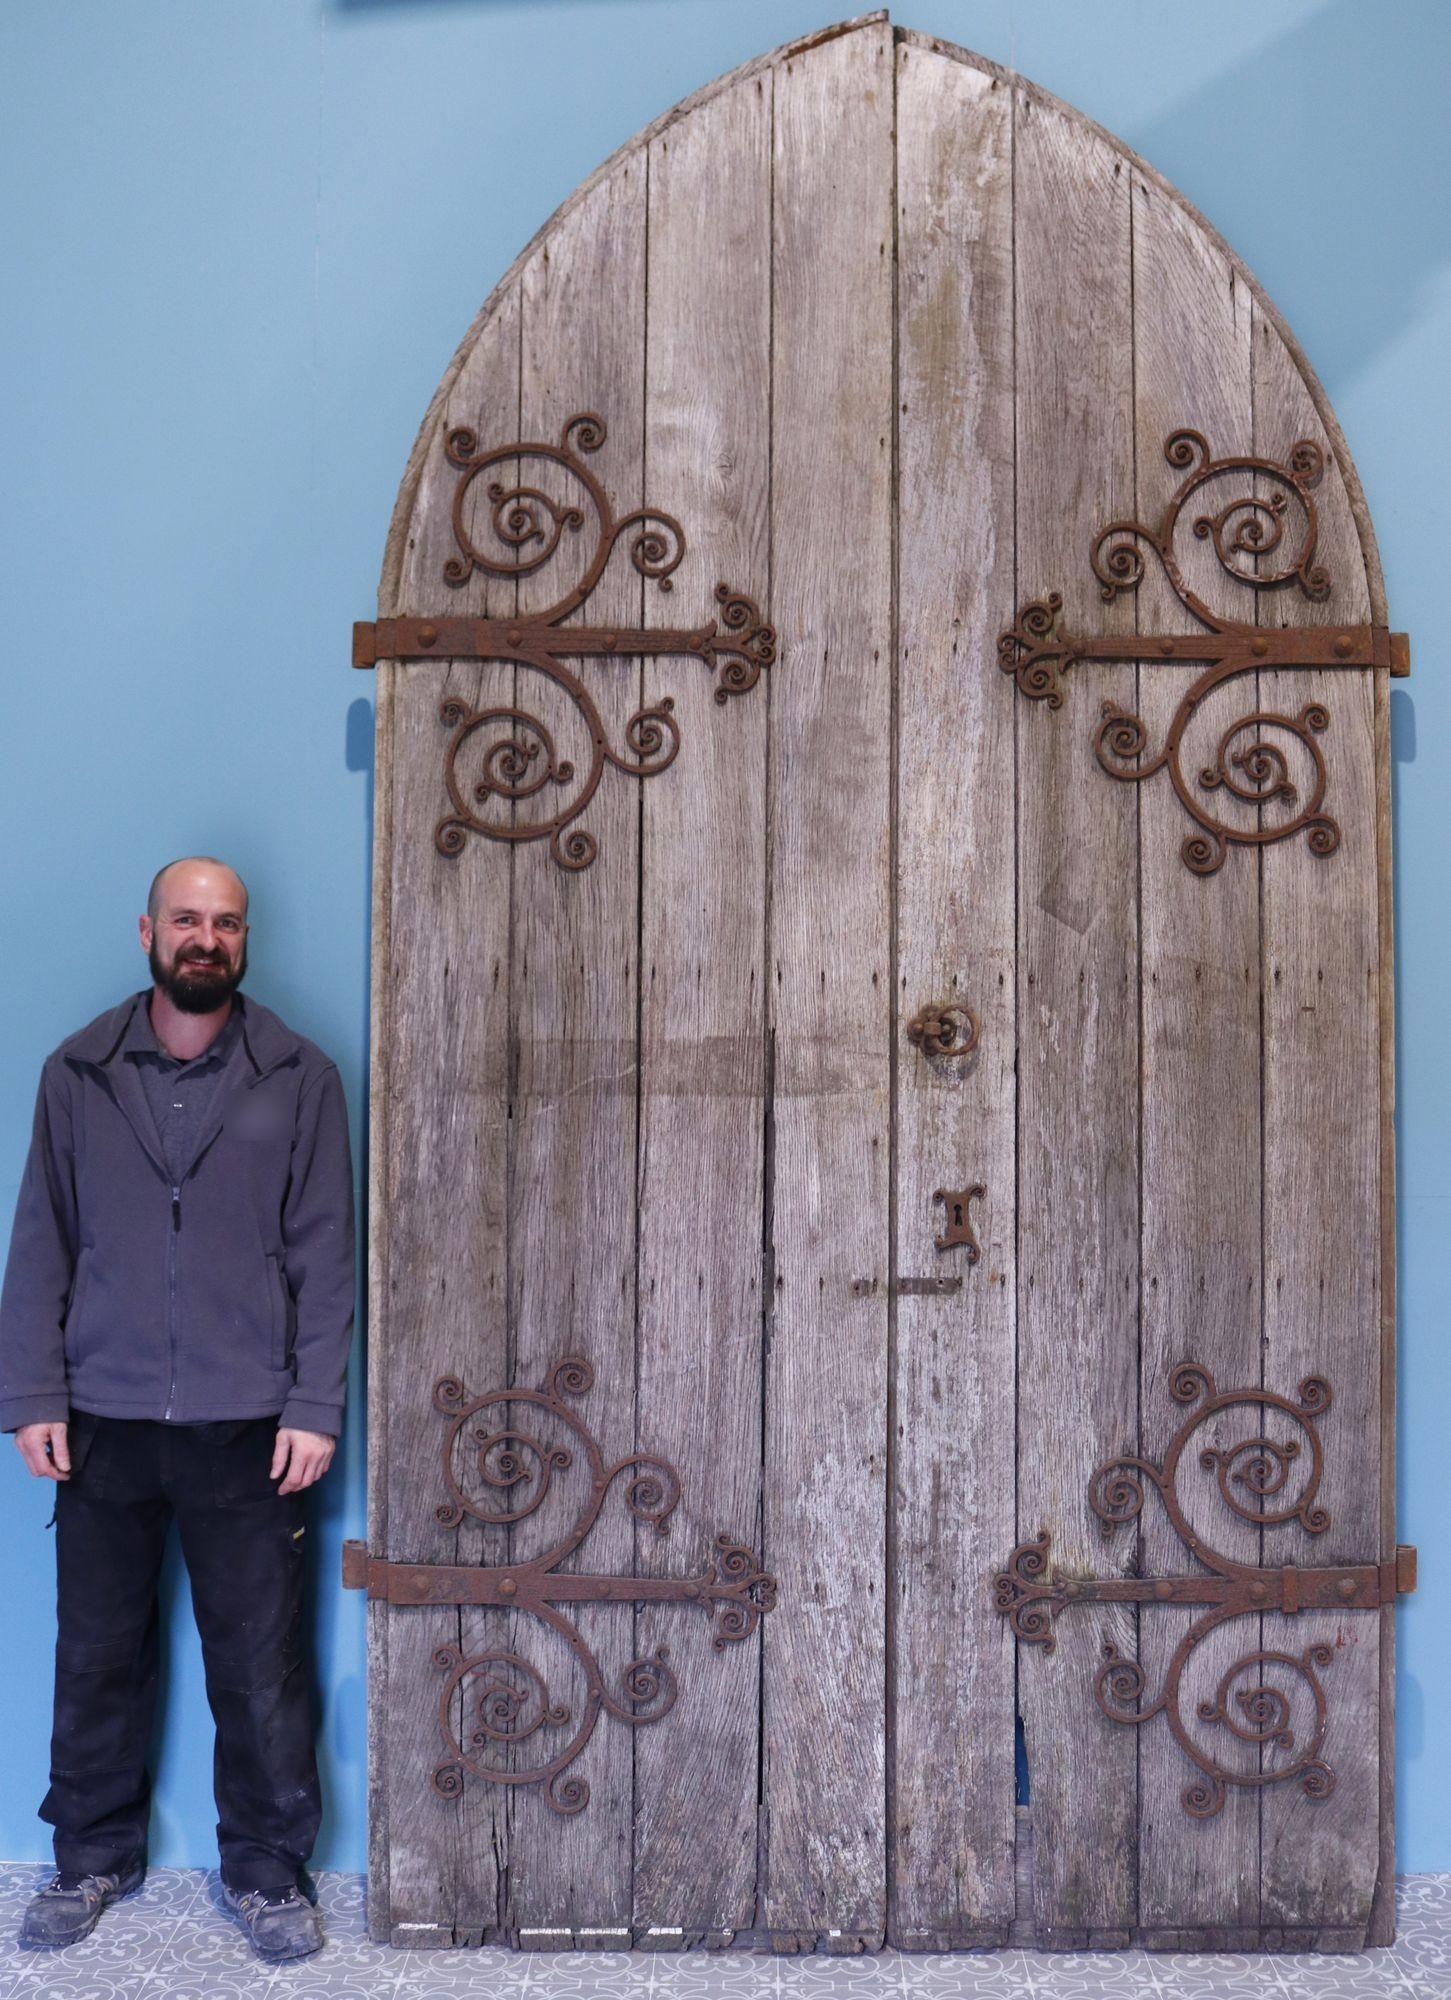 Ein Satz wiederhergestellter gotischer Church's-Türen. Eine Reihe von großen gewölbten antiken Türen mit Original-Beschlägen und einem verwitterten Zeit getragen Aussehen. Diese wunderschönen Eichentüren sind mit fantastischen schmiedeeisernen